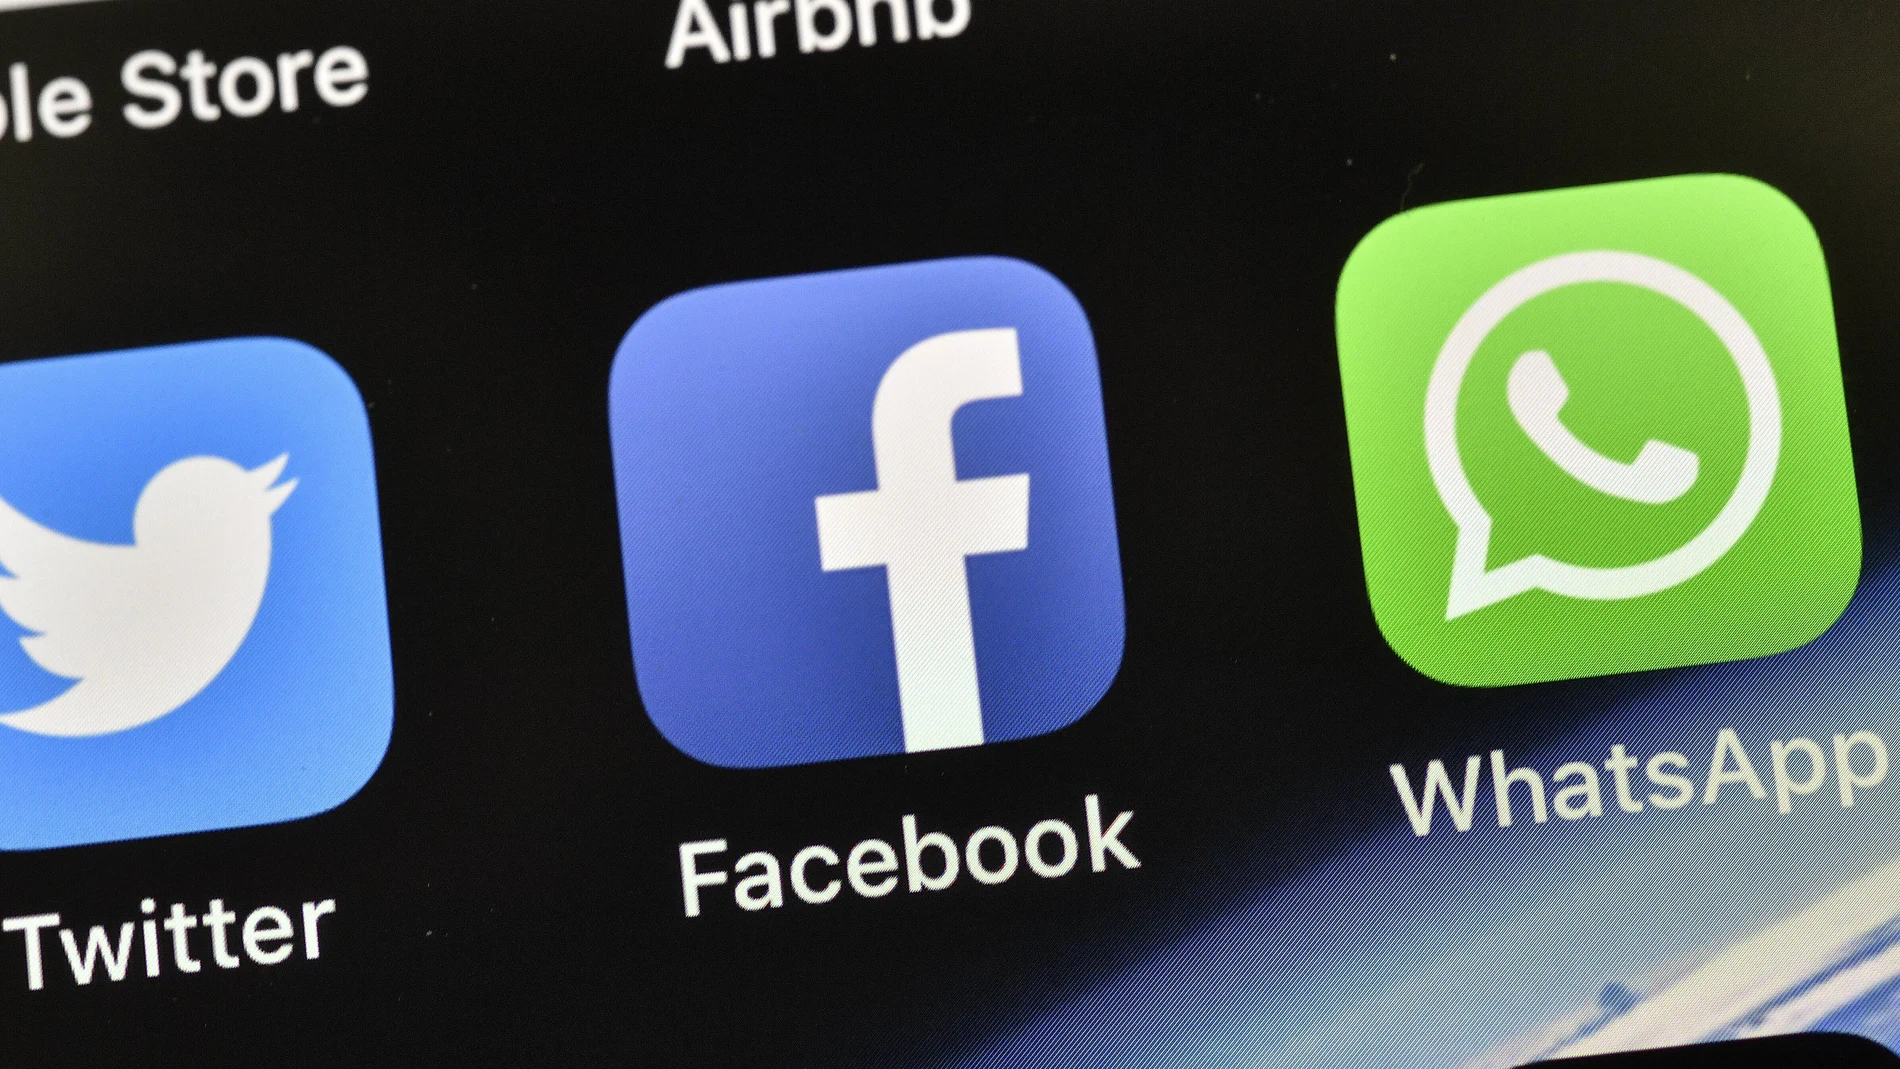 La mujer condenada utilizó la red social Facebook y la aplicación de mensajería WhatsApp para llevar a cabo el acoso a su cuñada